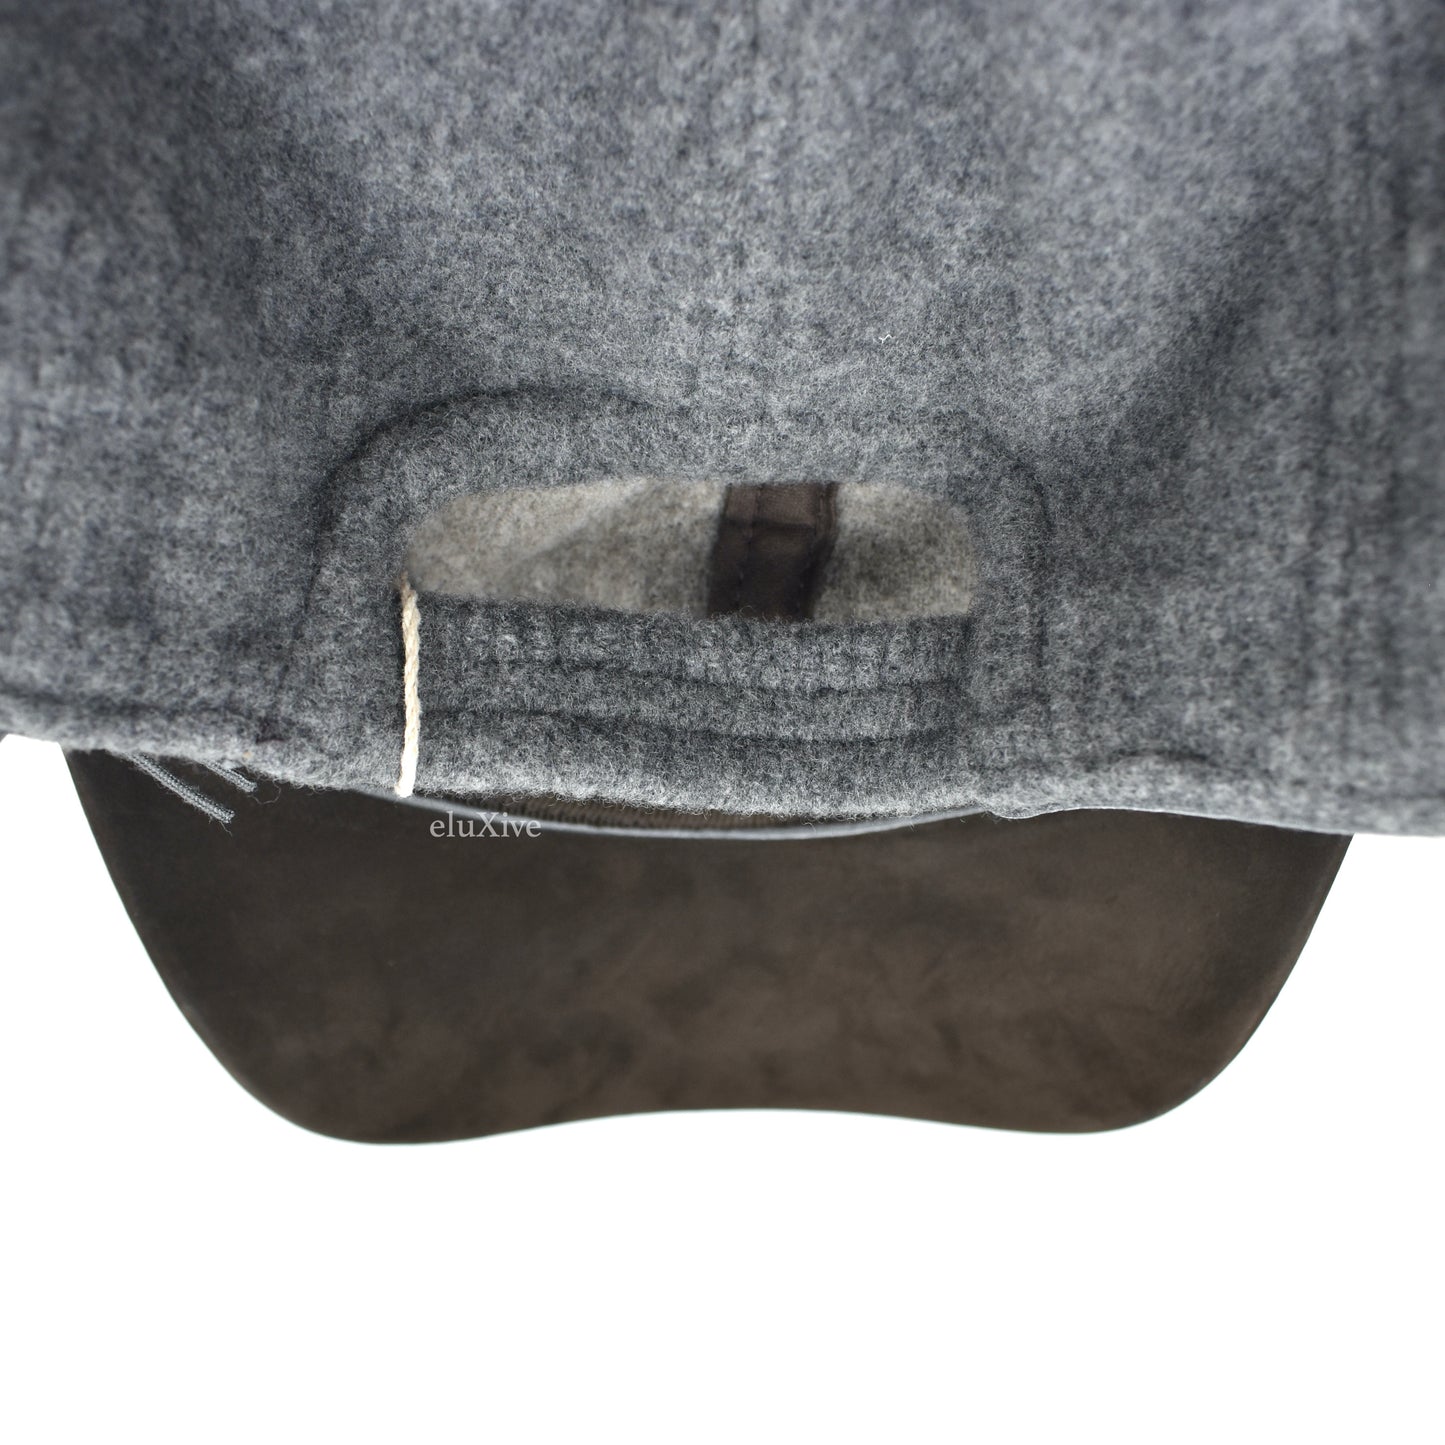 Ermenegildo Zegna - Gray Wool / Casemere / Leather Hat